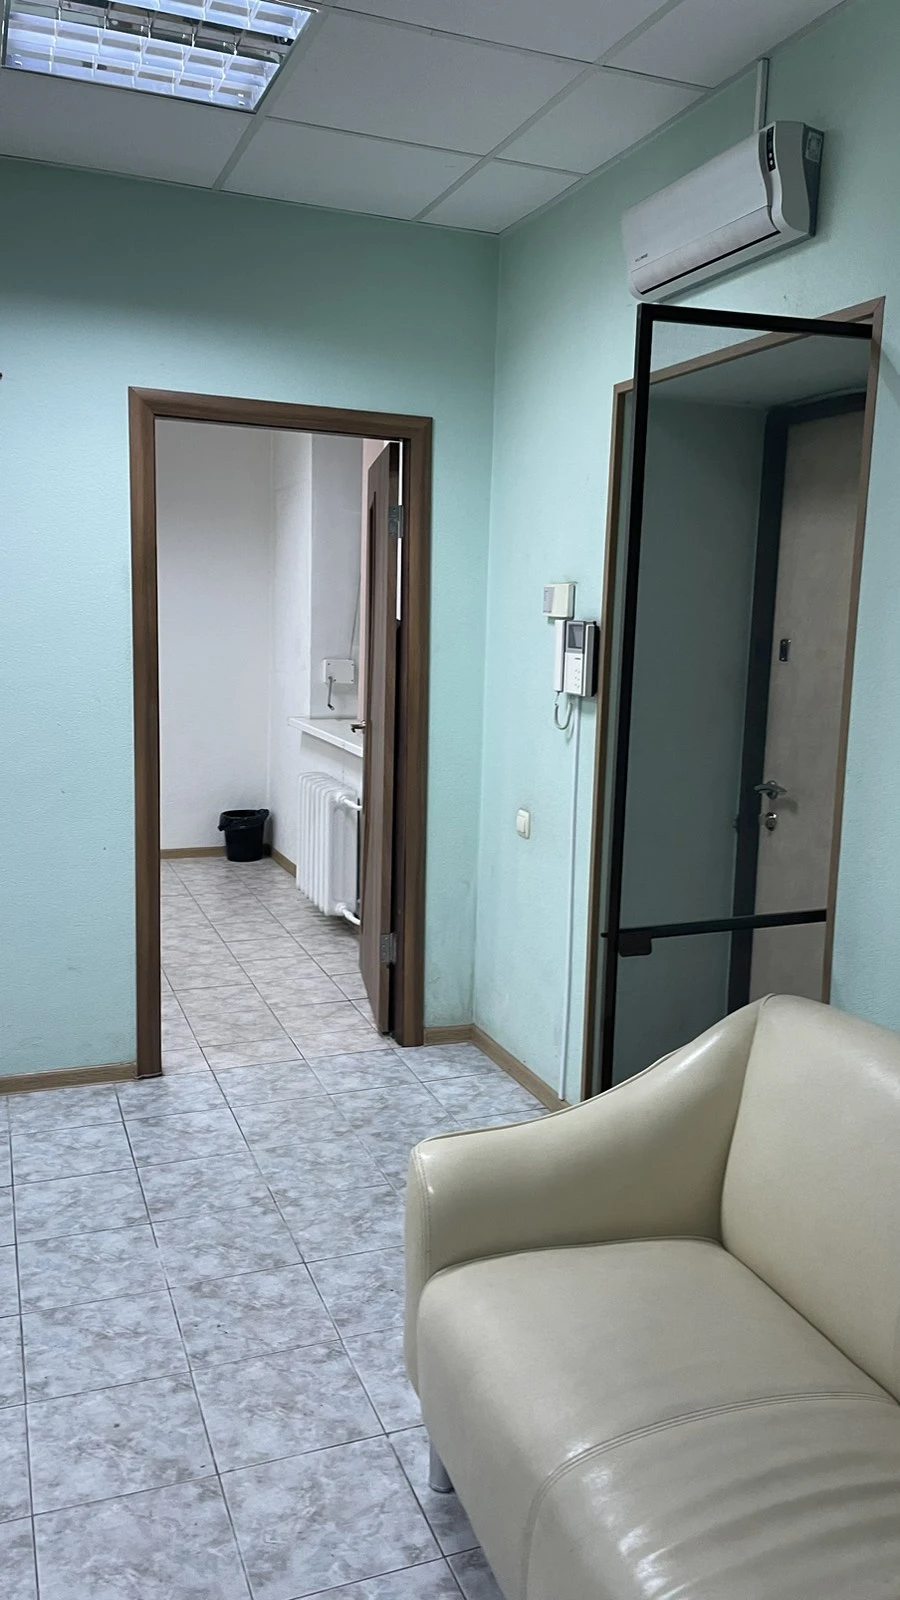 Продаж квартиры. 3 комнаты, 49 m², 1 этаж/2 этажа. Академгородок, Киев. 